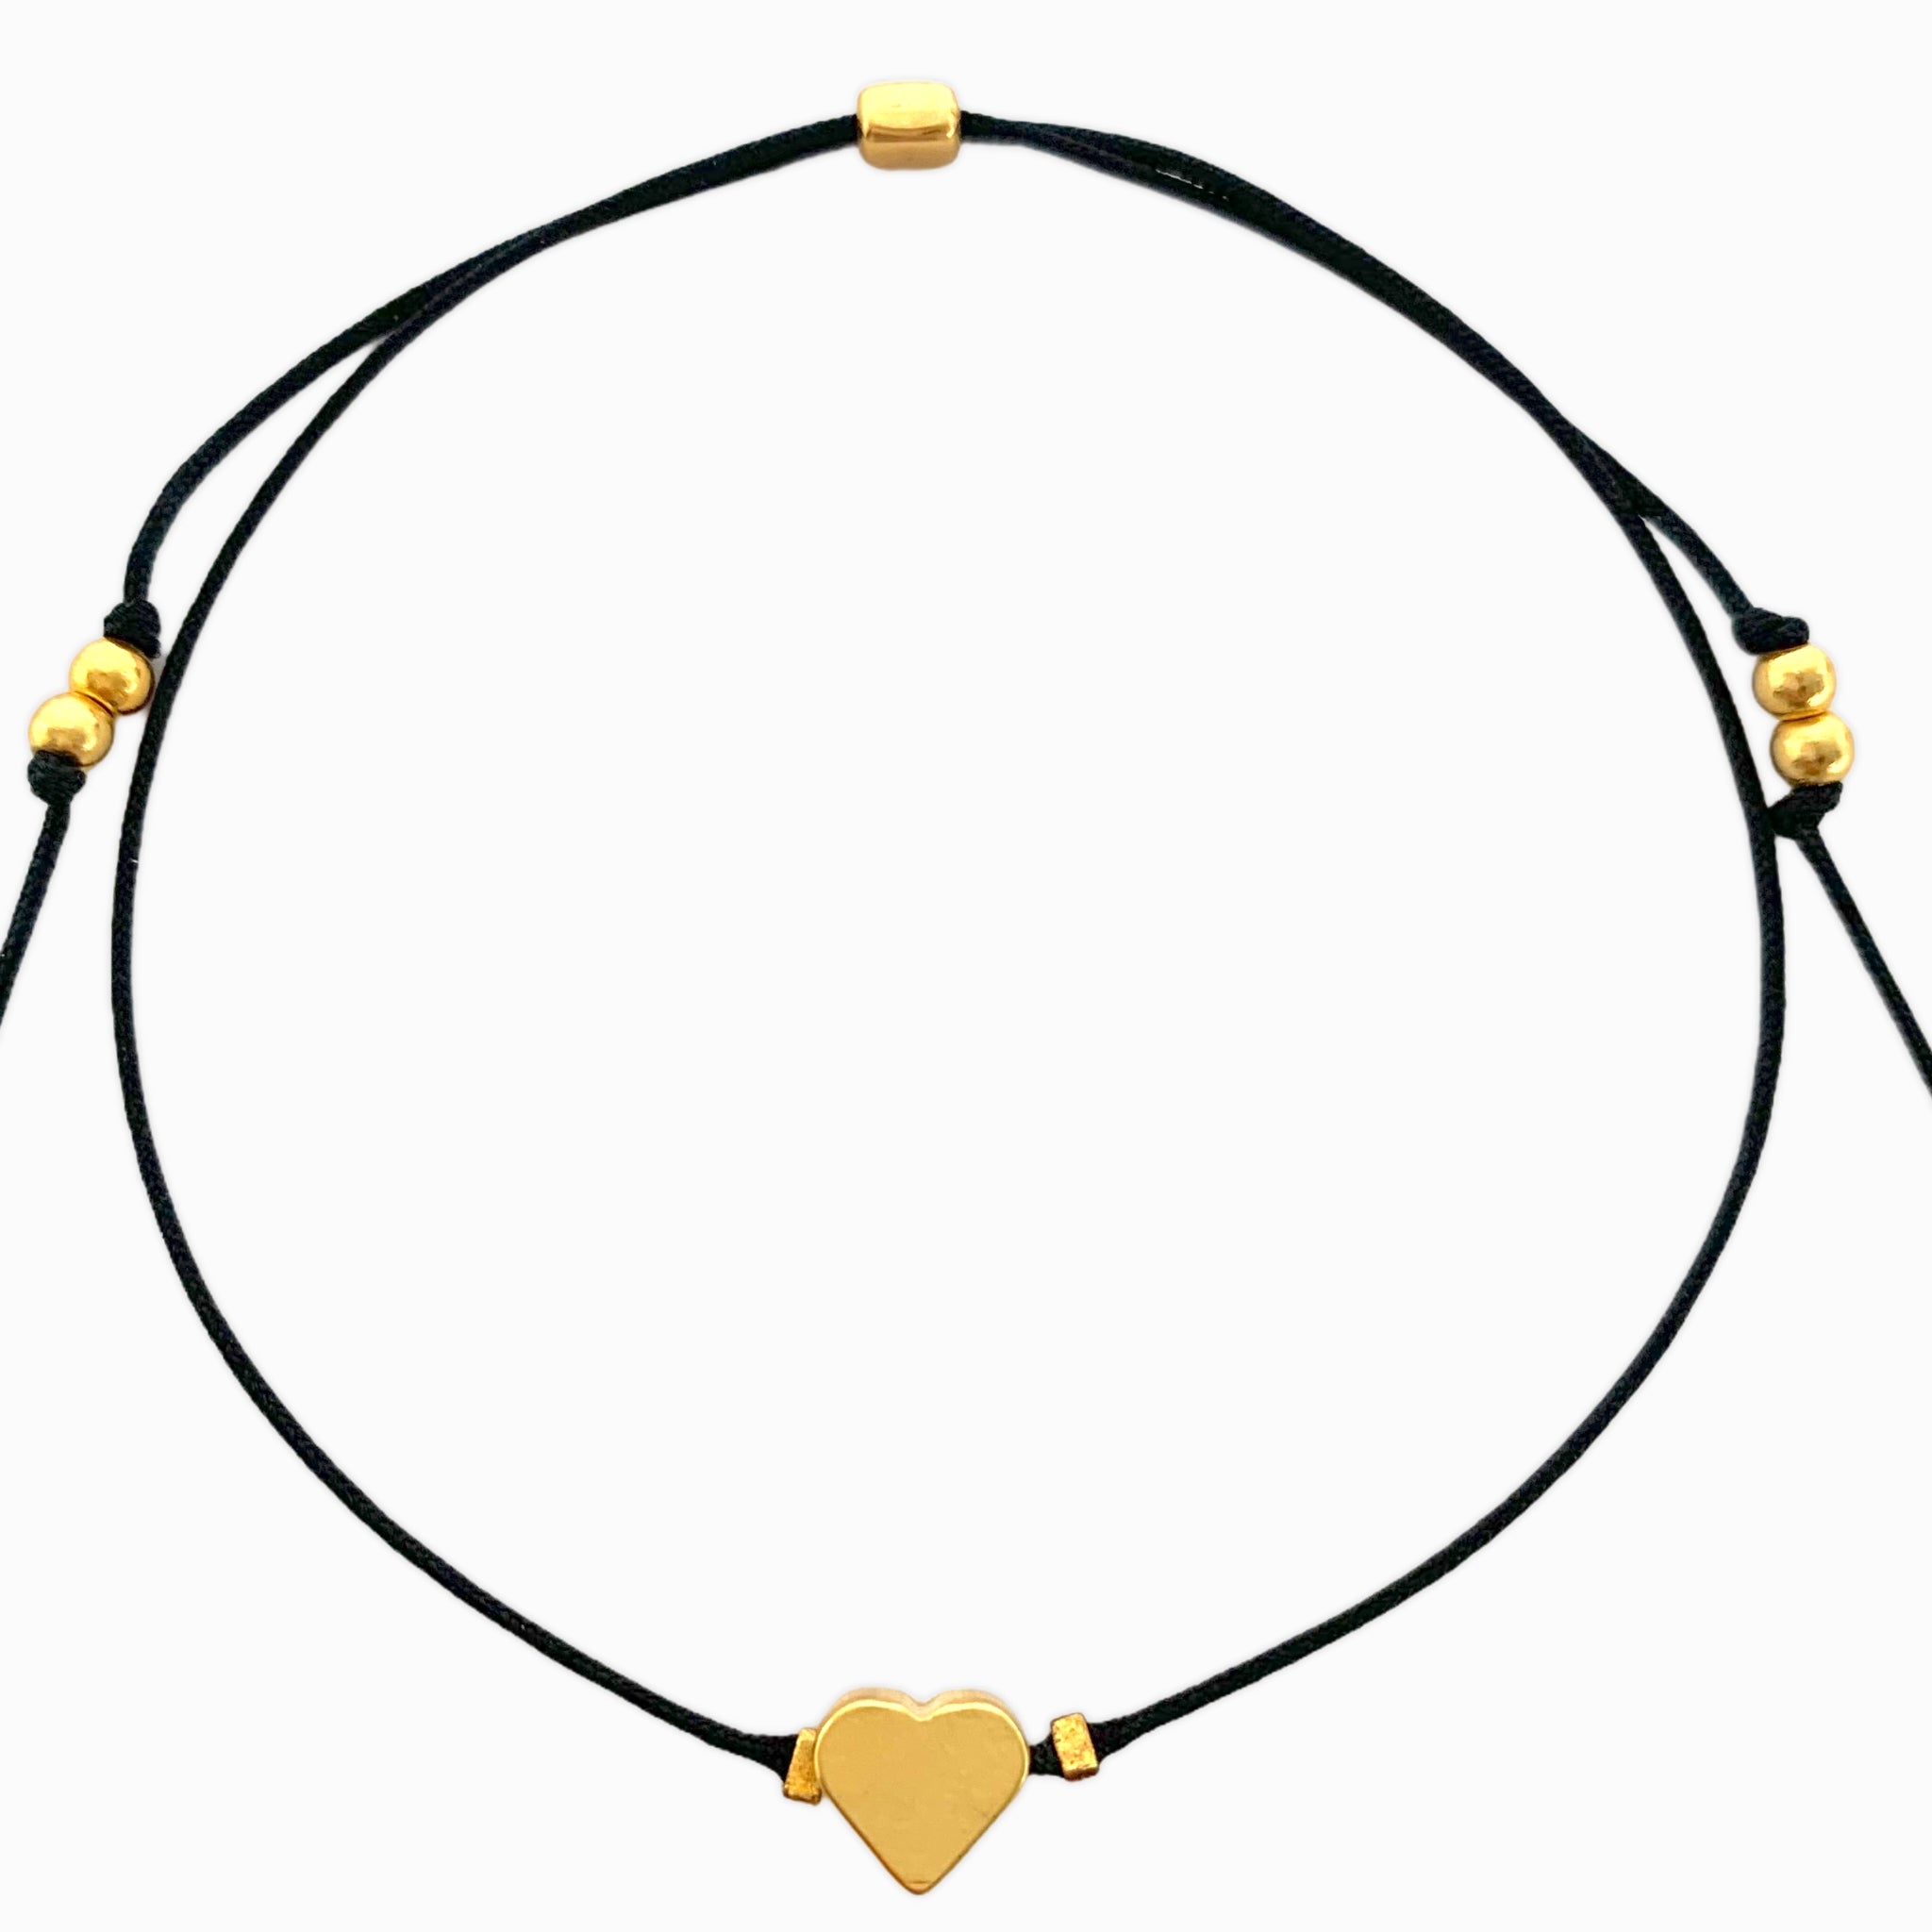 Heart Bracelet with Yarn